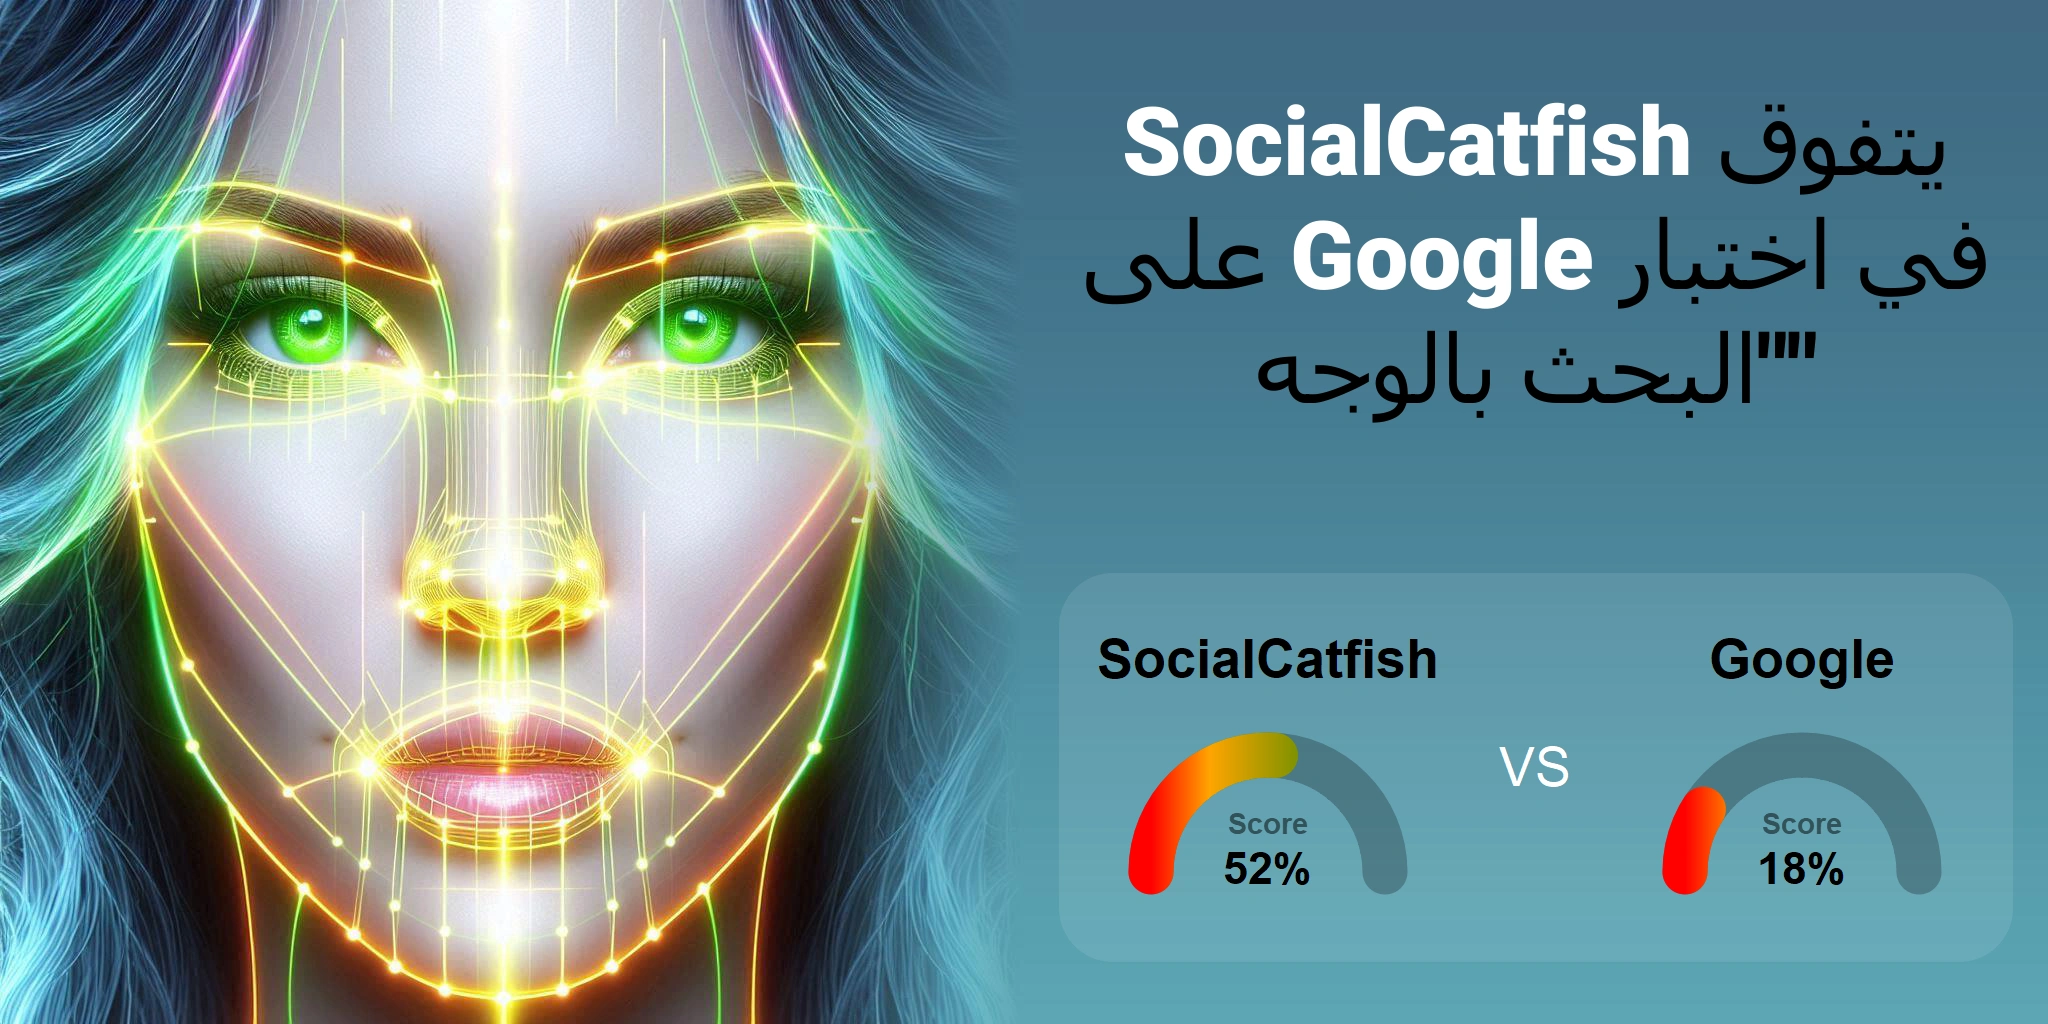 ما هو الأفضل للبحث بالوجه: <br>Google أو SocialCatfish؟